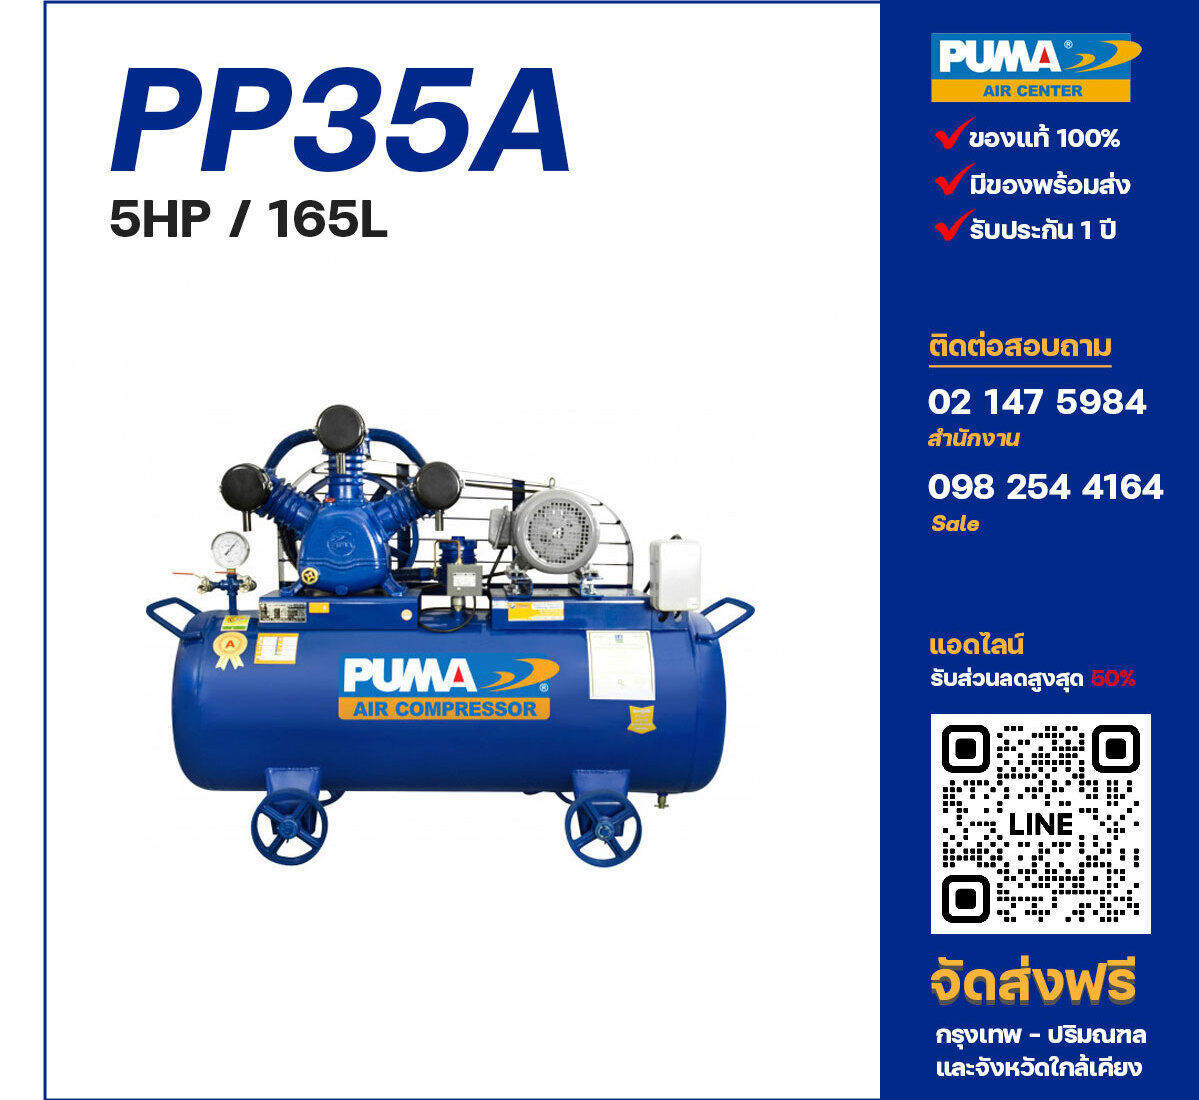 ปั๊มลมพูม่า PUMA PP35A-PPM220V/380V ปั๊มลมลูกสูบ ขนาด 3 สูบ 5 แรงม้า 165 ลิตร PUMA พร้อมมอเตอร์ PUMA ไฟ 220V/380V ส่งฟรี กรุงเทพฯ-ปริมณฑล รับประกัน 1 ปี